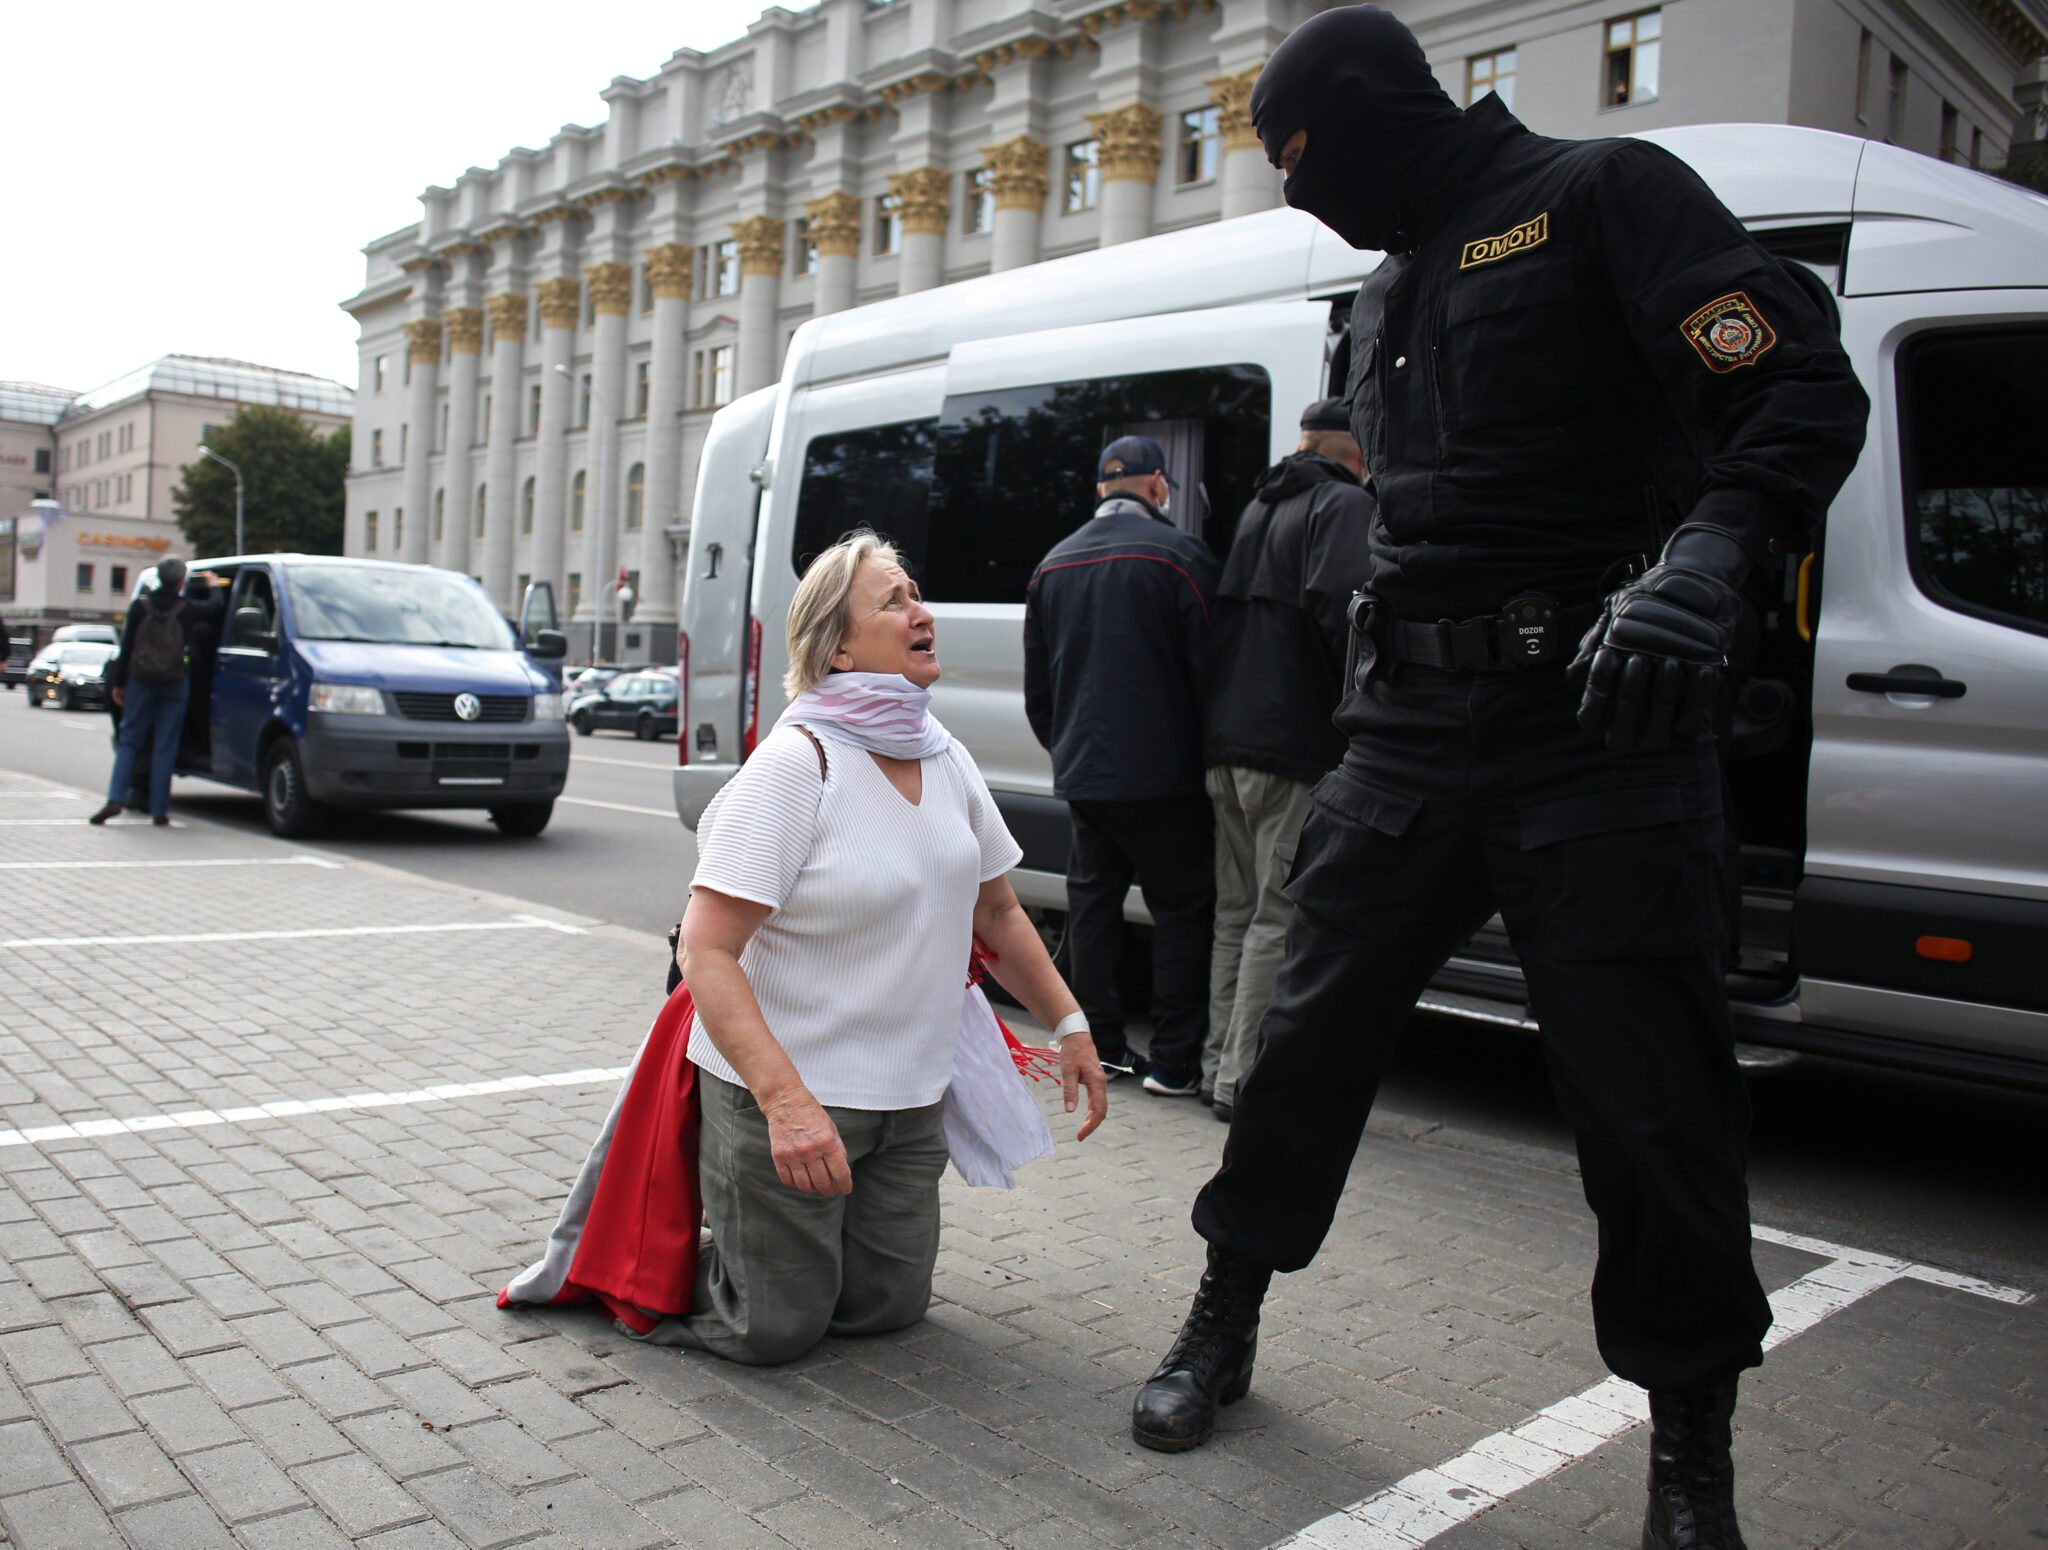 Участница акции протеста в Минске на коленях перед силовиками. Фото Tut.By via REUTERS/Scanpix/Leta